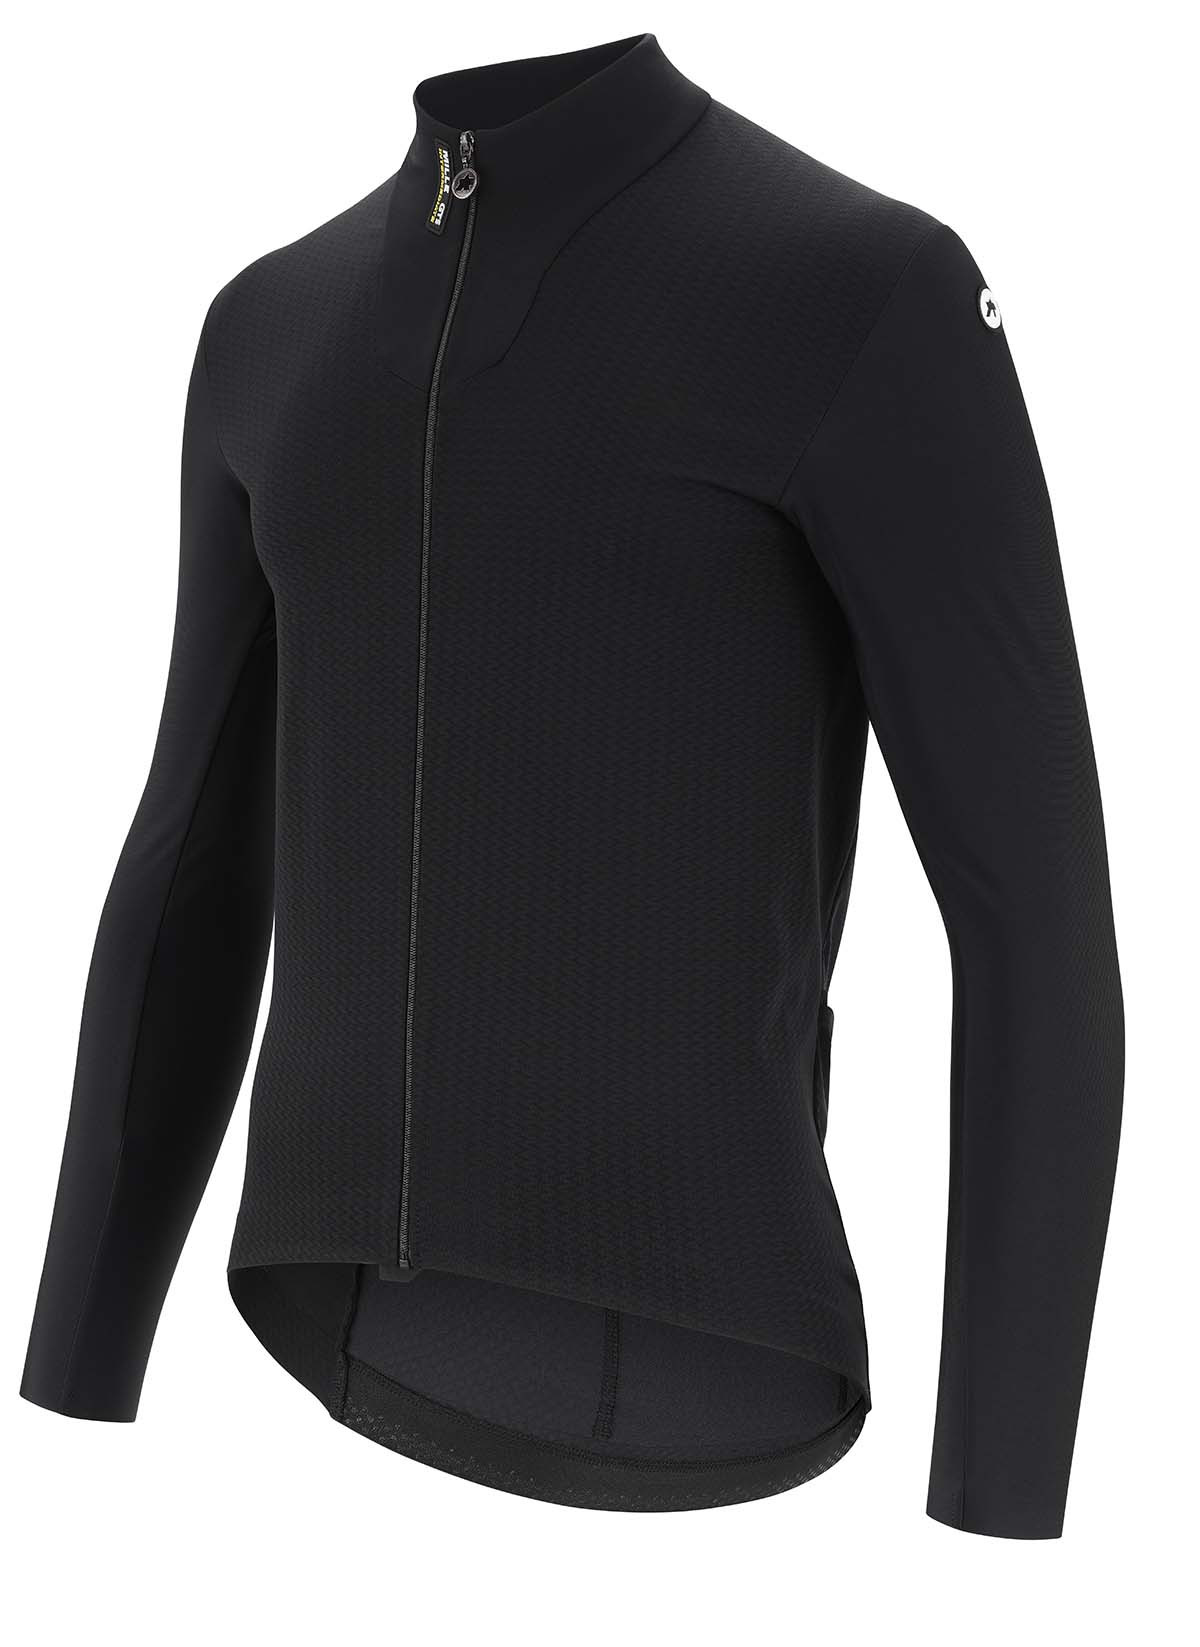 Assos Mille Gts Spring Fall Jacket C2  - Blackseries